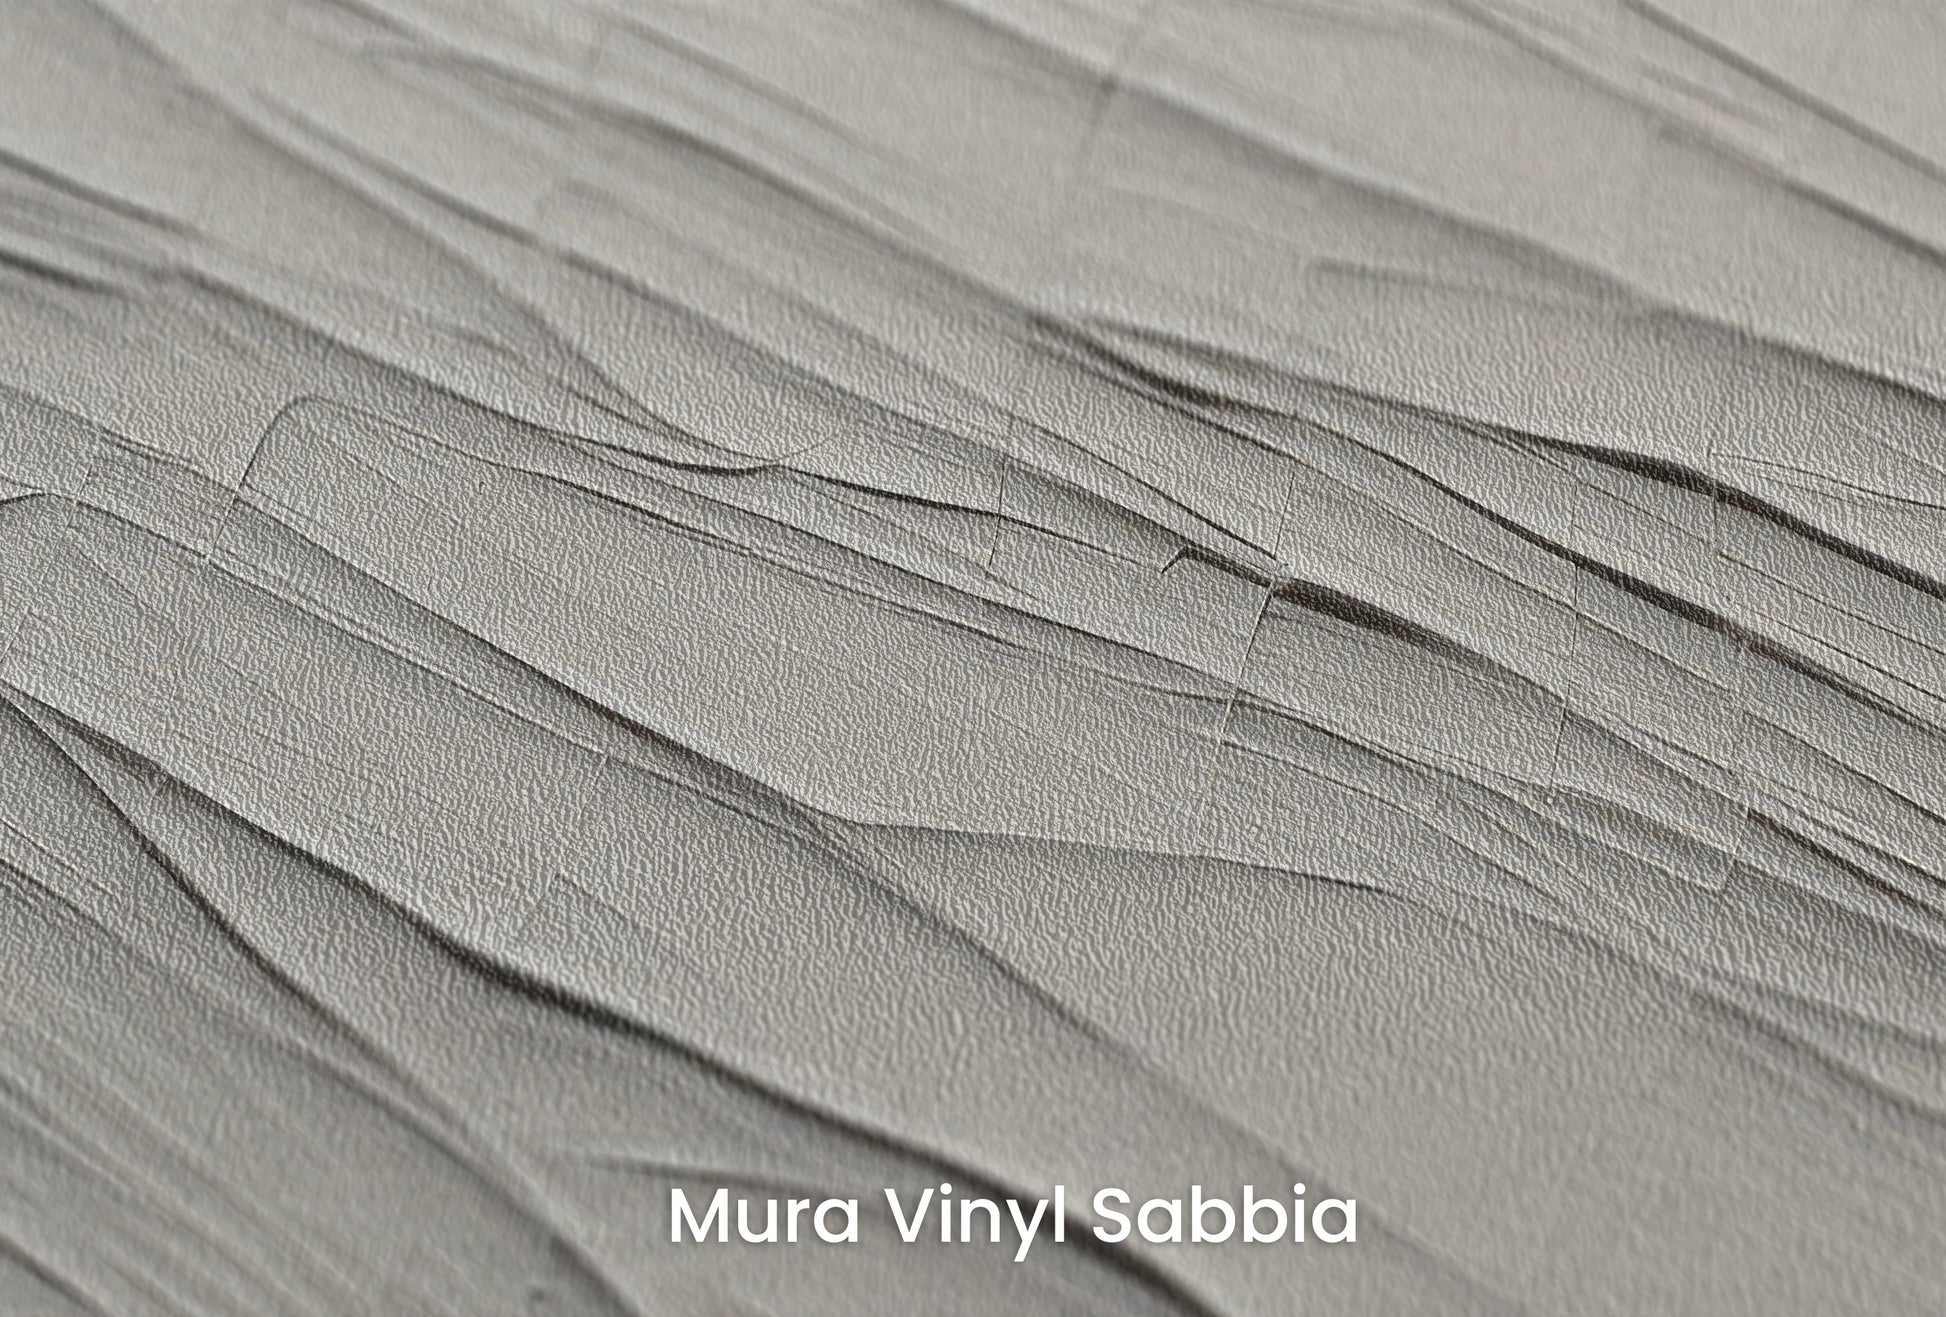 Zbliżenie na artystyczną fototapetę o nazwie Subtle Dynamics na podłożu Mura Vinyl Sabbia struktura grubego ziarna piasku.